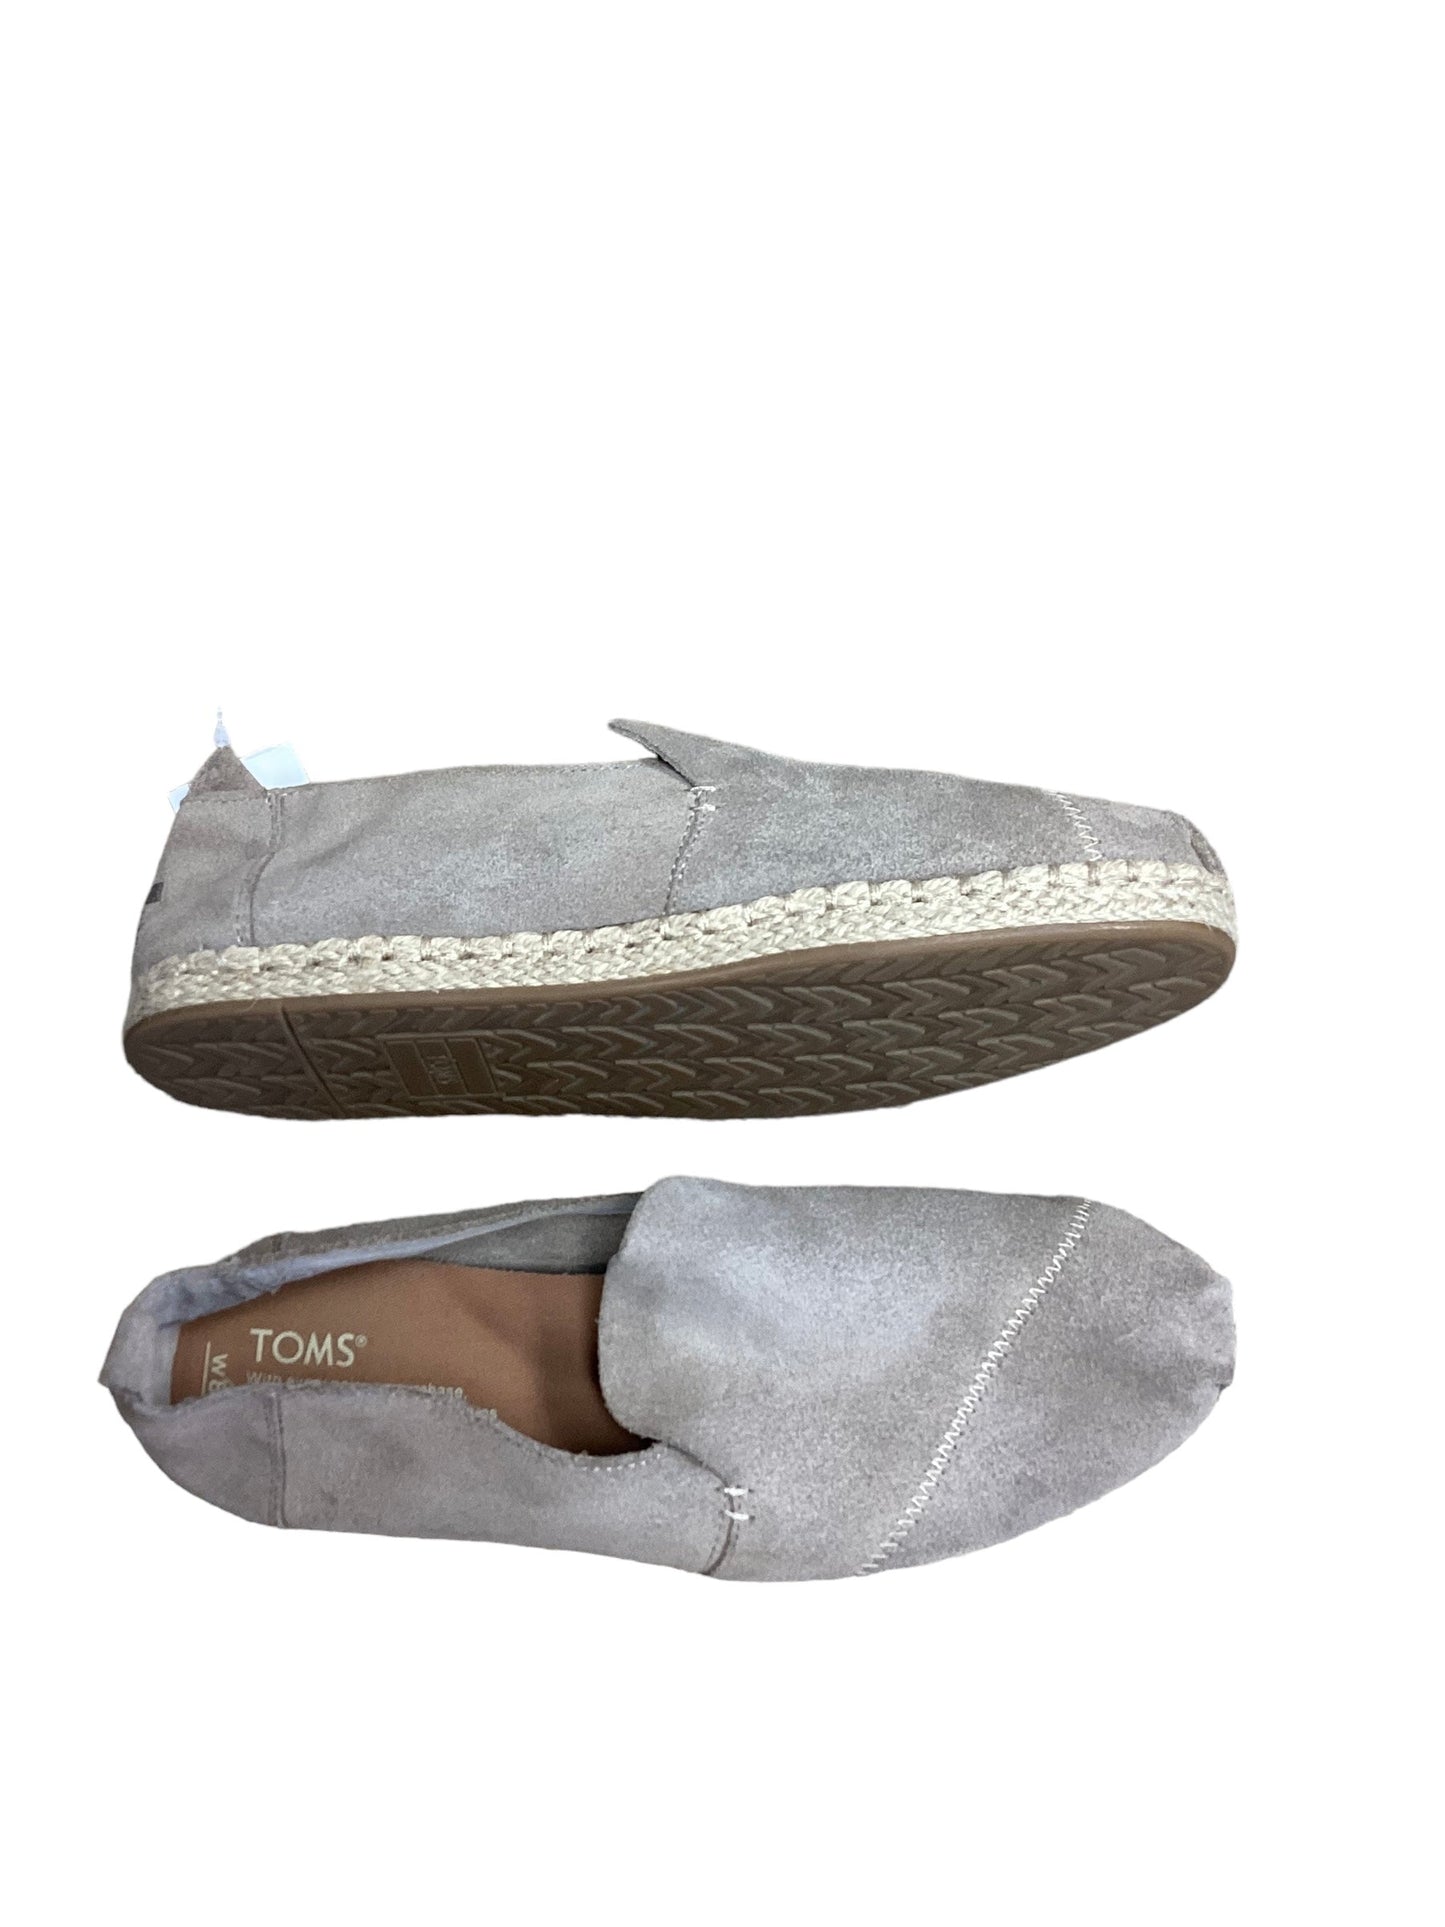 Tan Shoes Flats Toms, Size 8